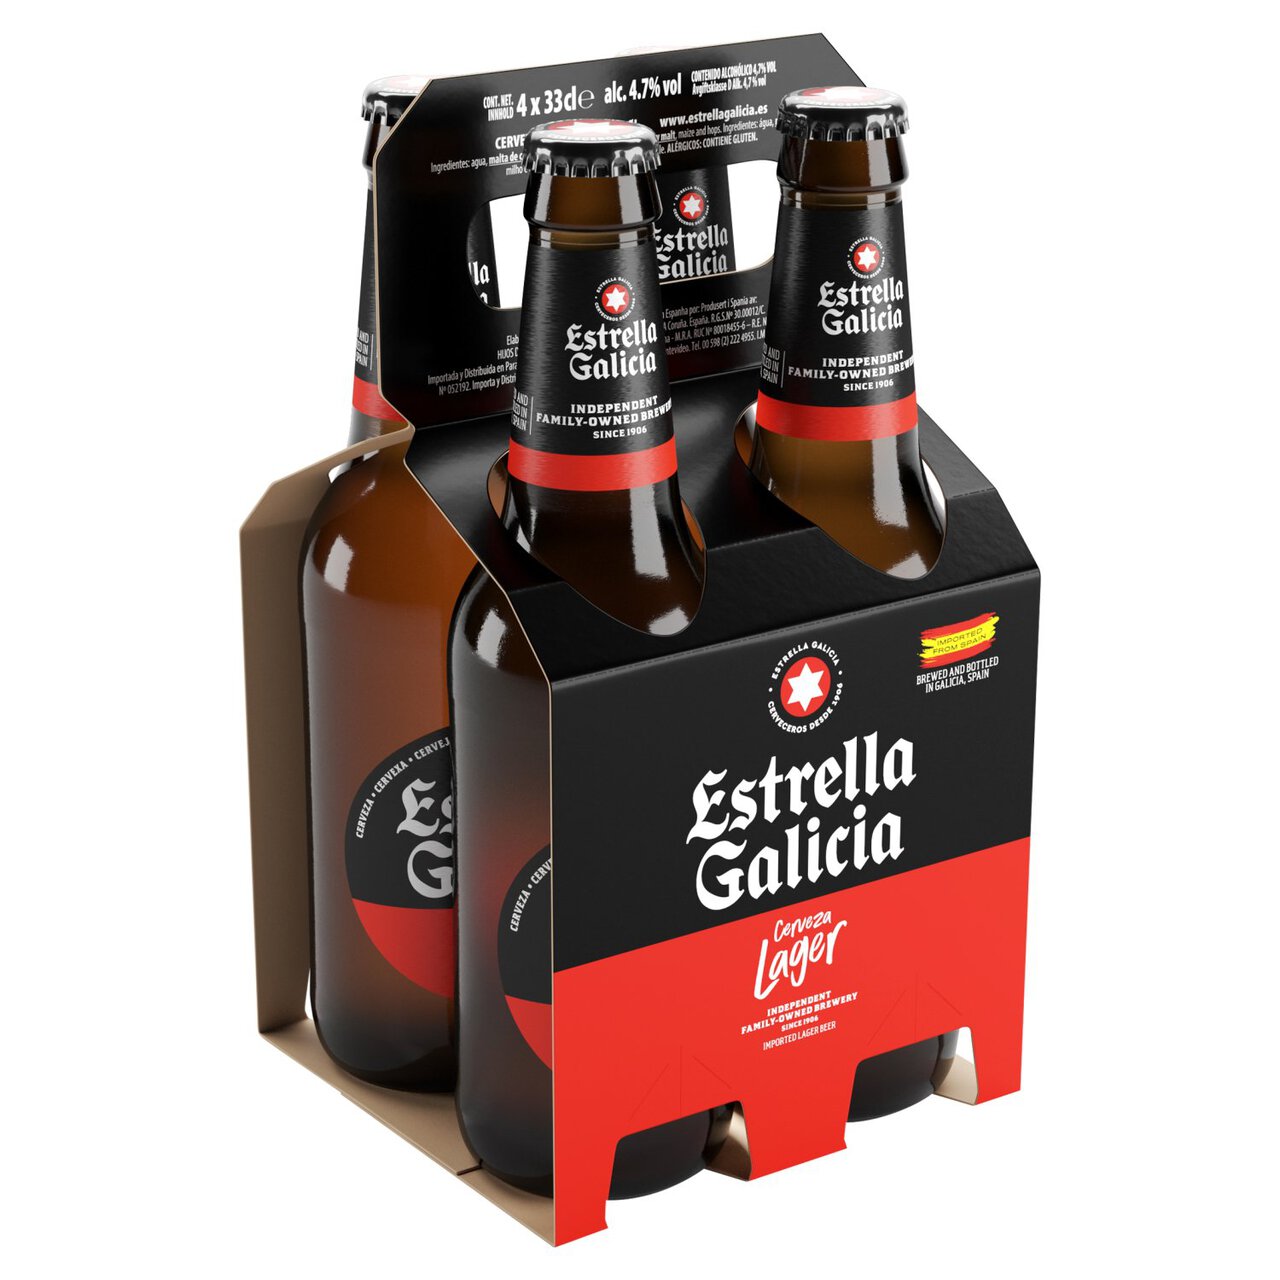 Estrella Galicia Premium Lager 4 x 330ml